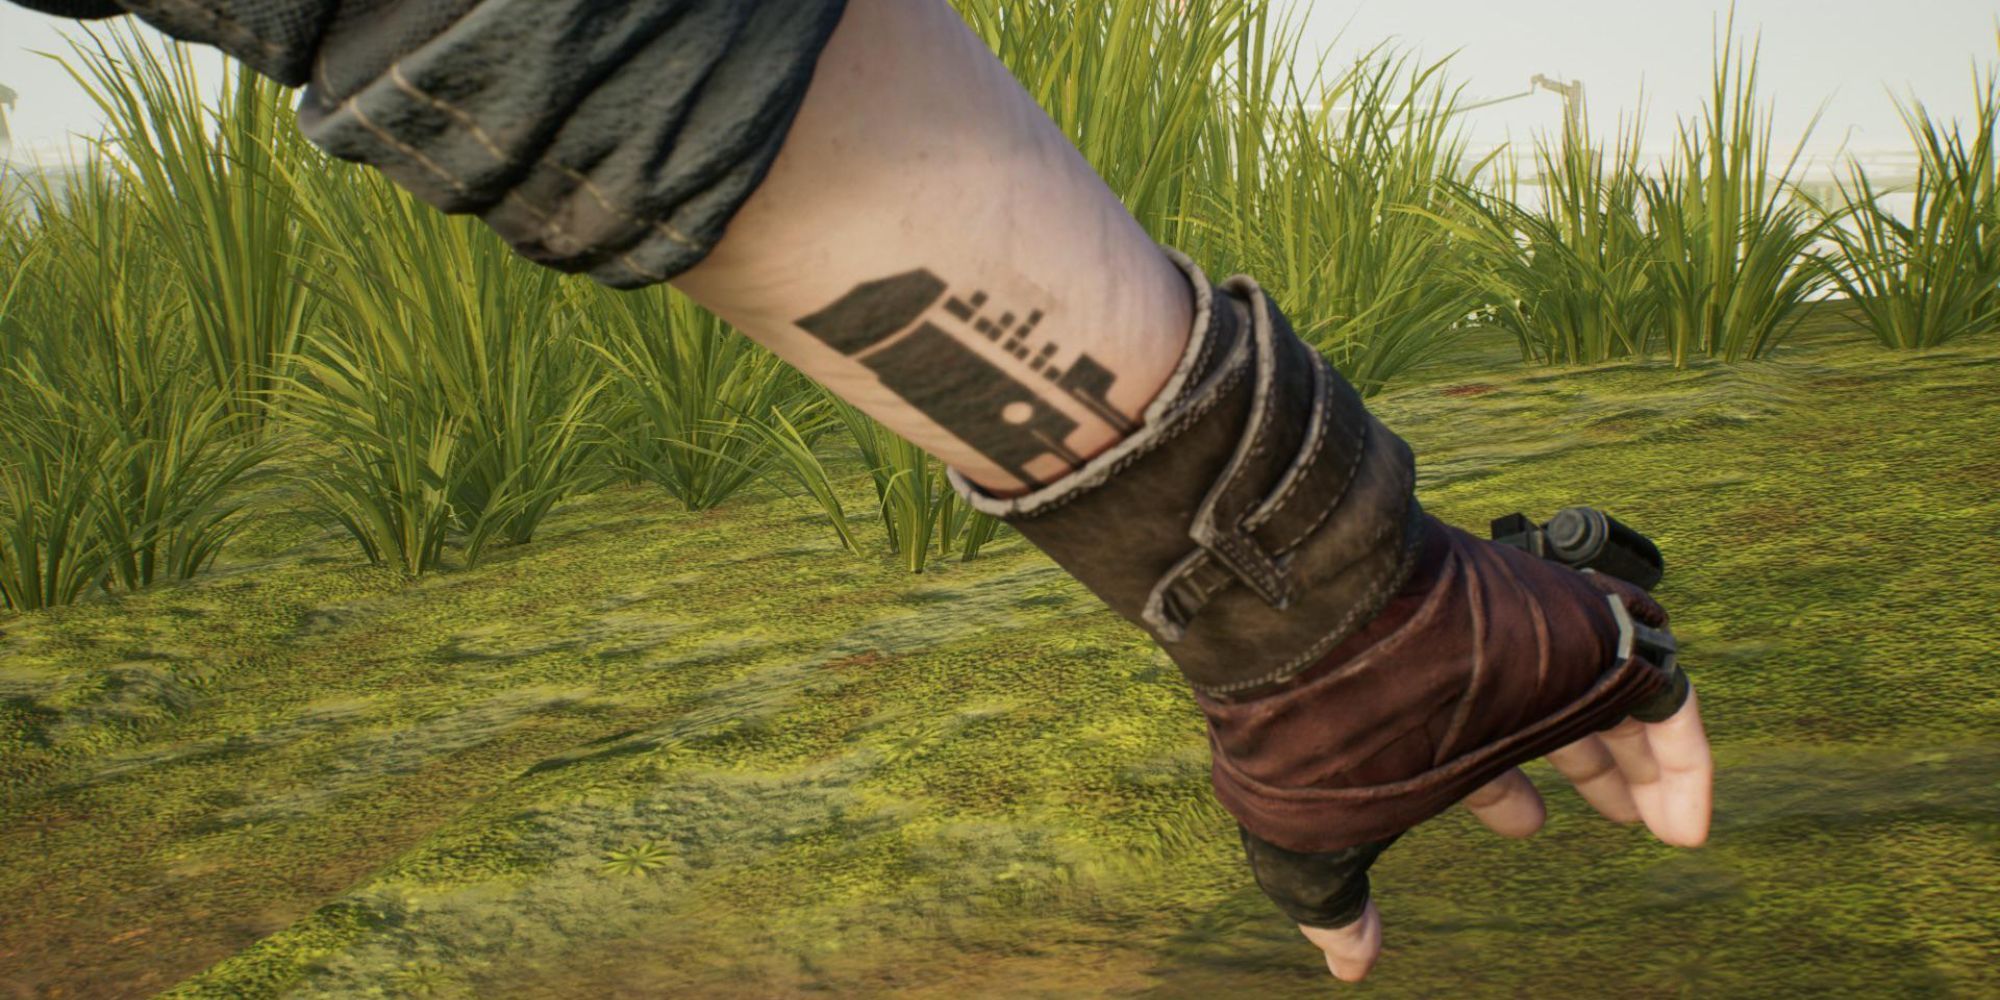 Que significa el tatuaje de la lagrima